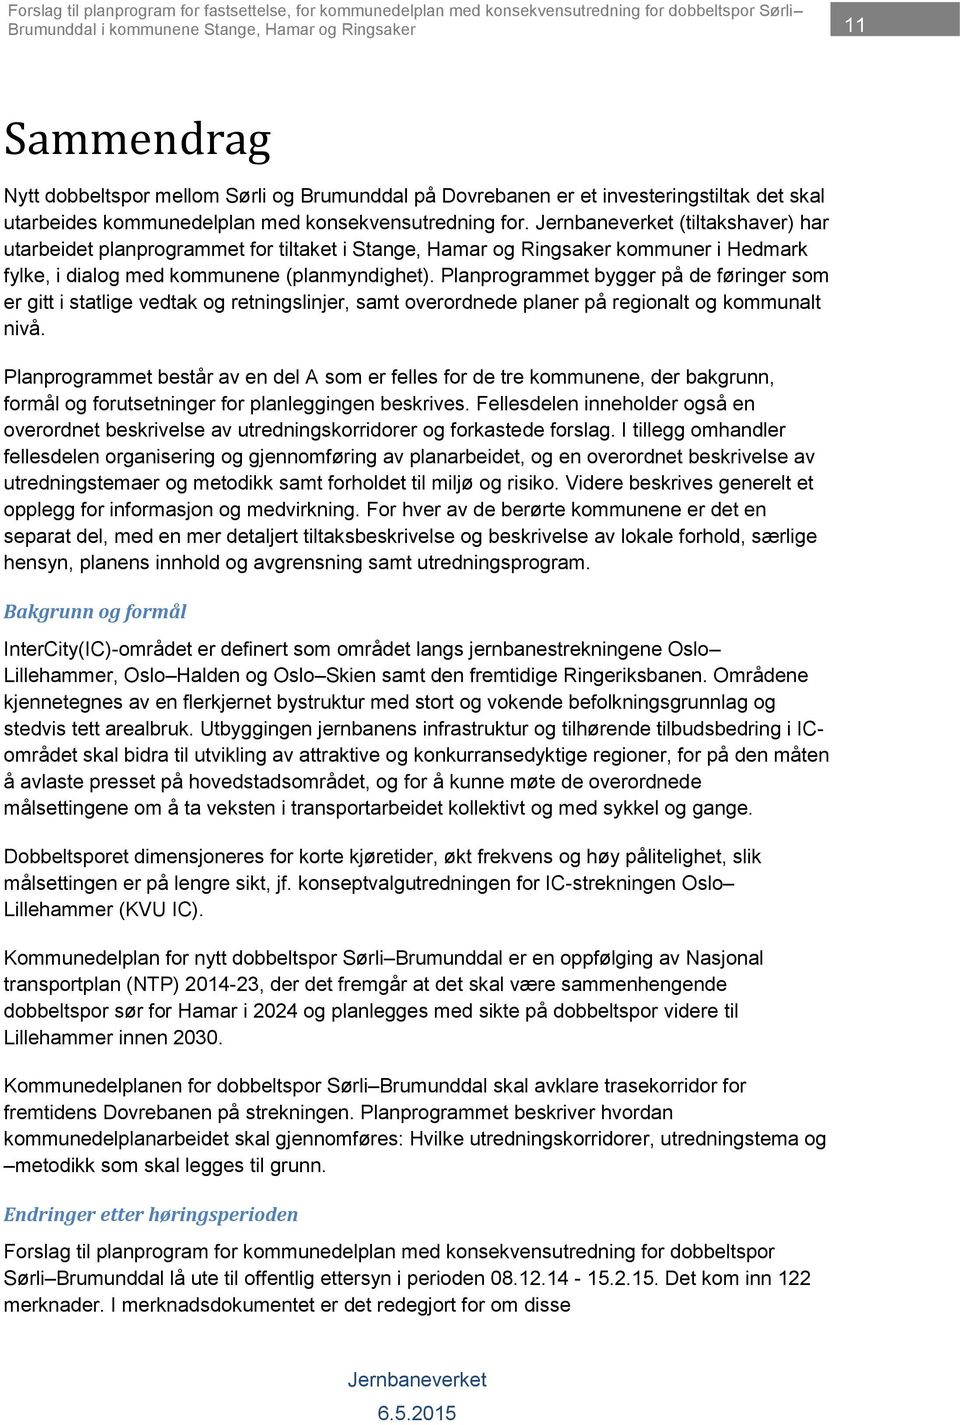 (tiltakshaver) har utarbeidet planprogrammet for tiltaket i Stange, Hamar og Ringsaker kommuner i Hedmark fylke, i dialog med kommunene (planmyndighet).